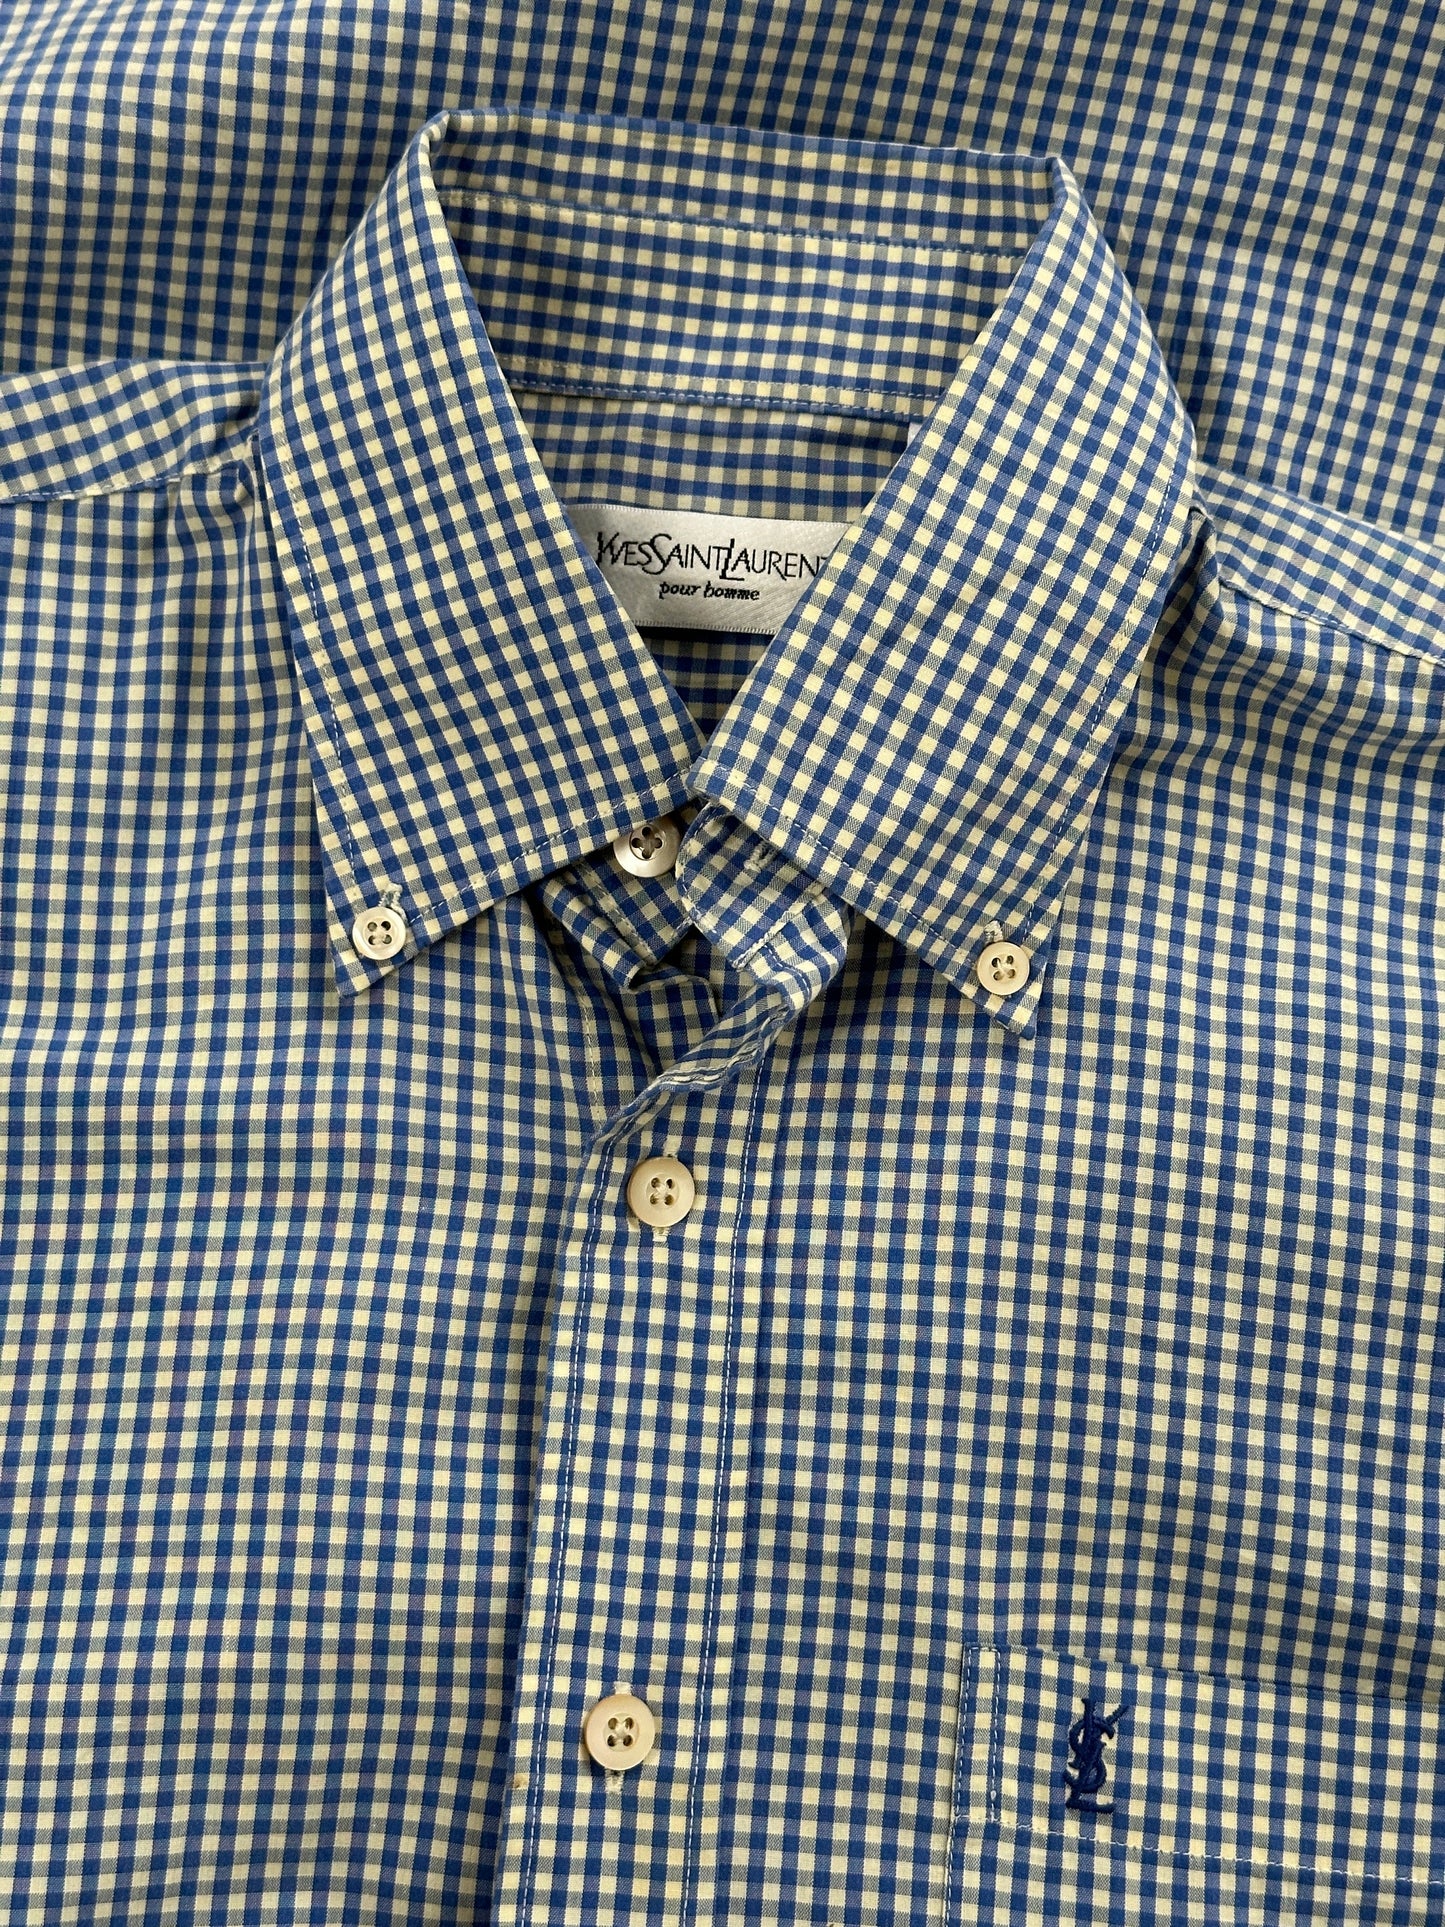 Yves Saint Laurent Check Cotton Logo Shirt - S/M